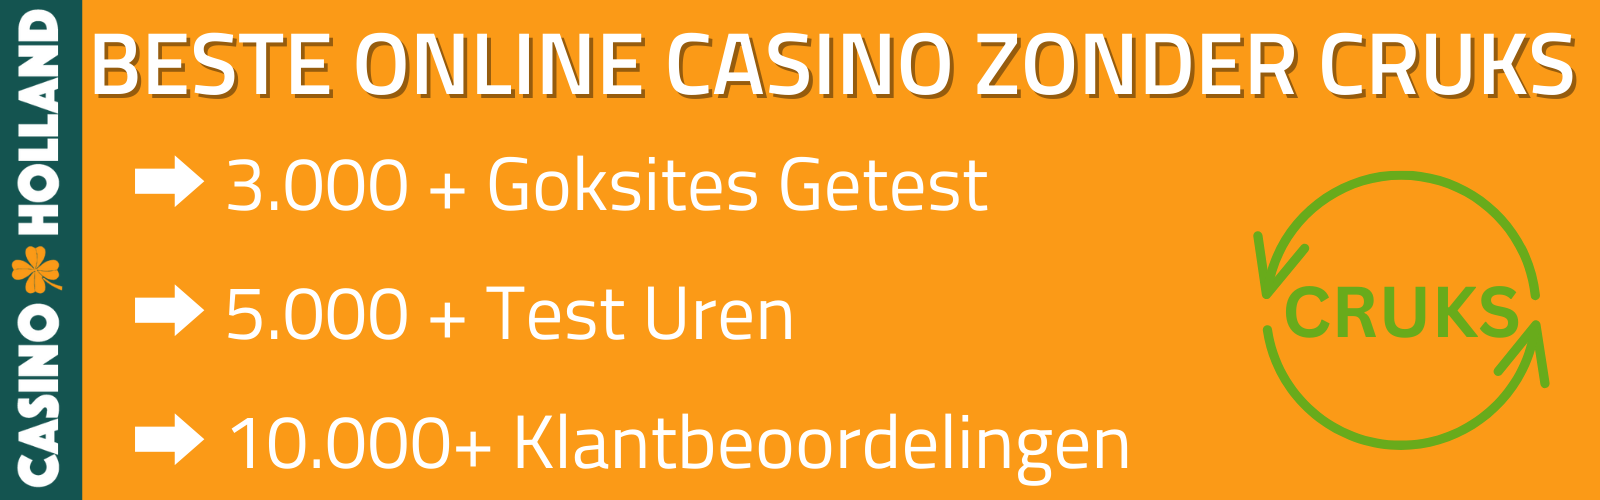 best online casino zonder cruks